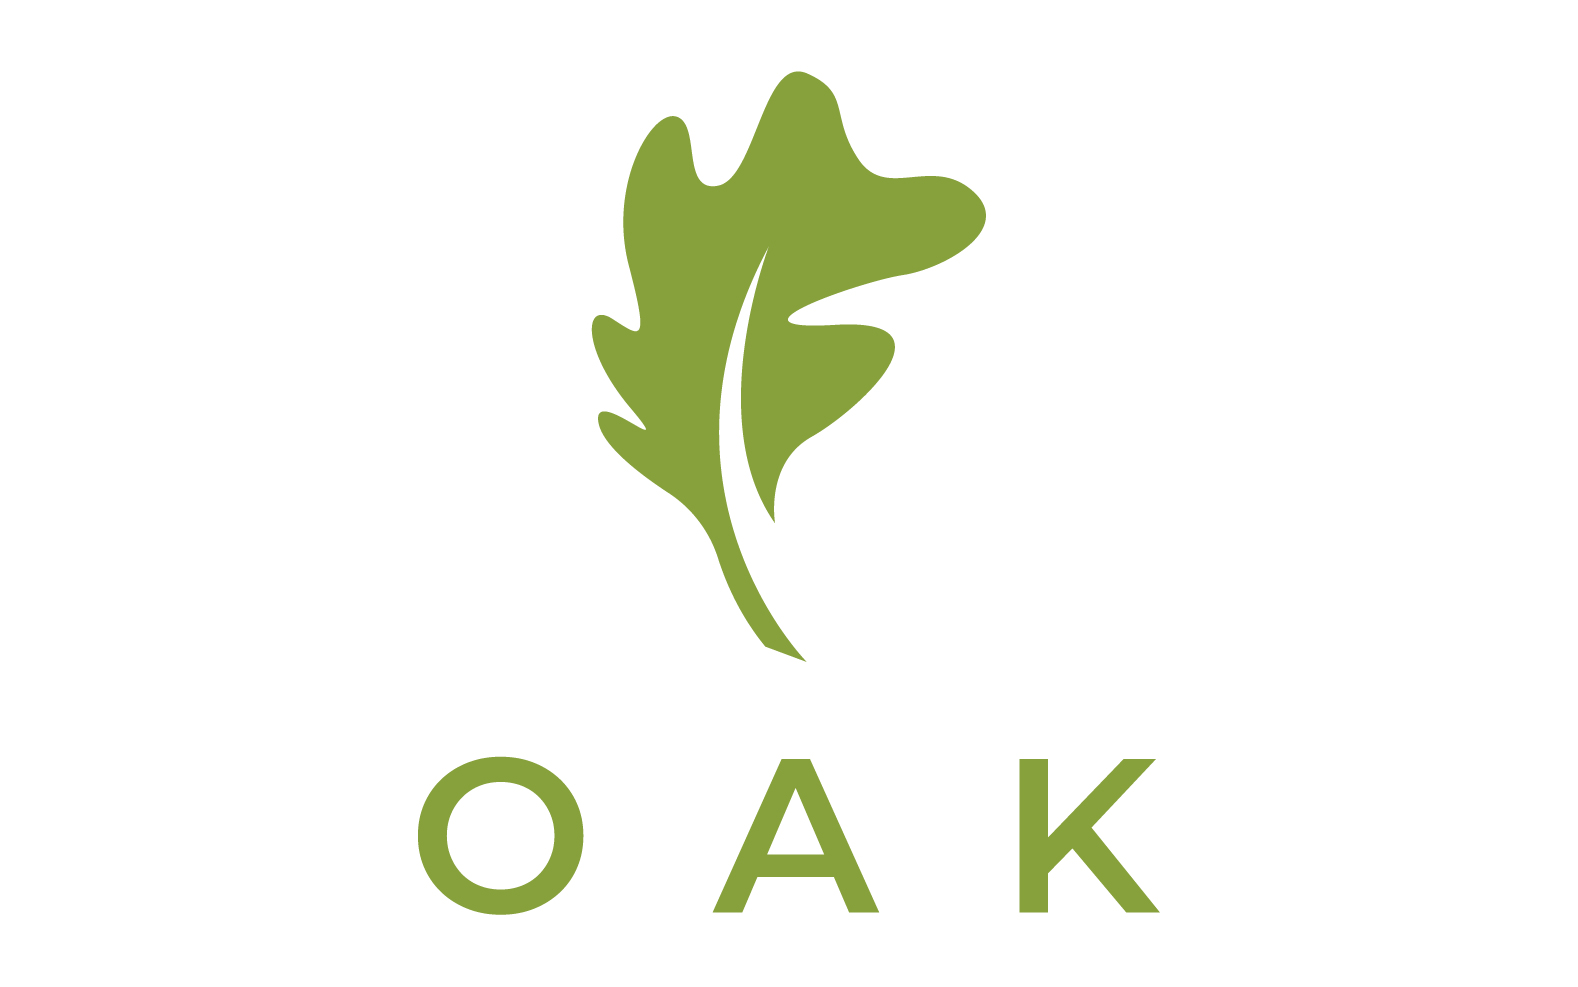 Oak leaf nature logo vector 7